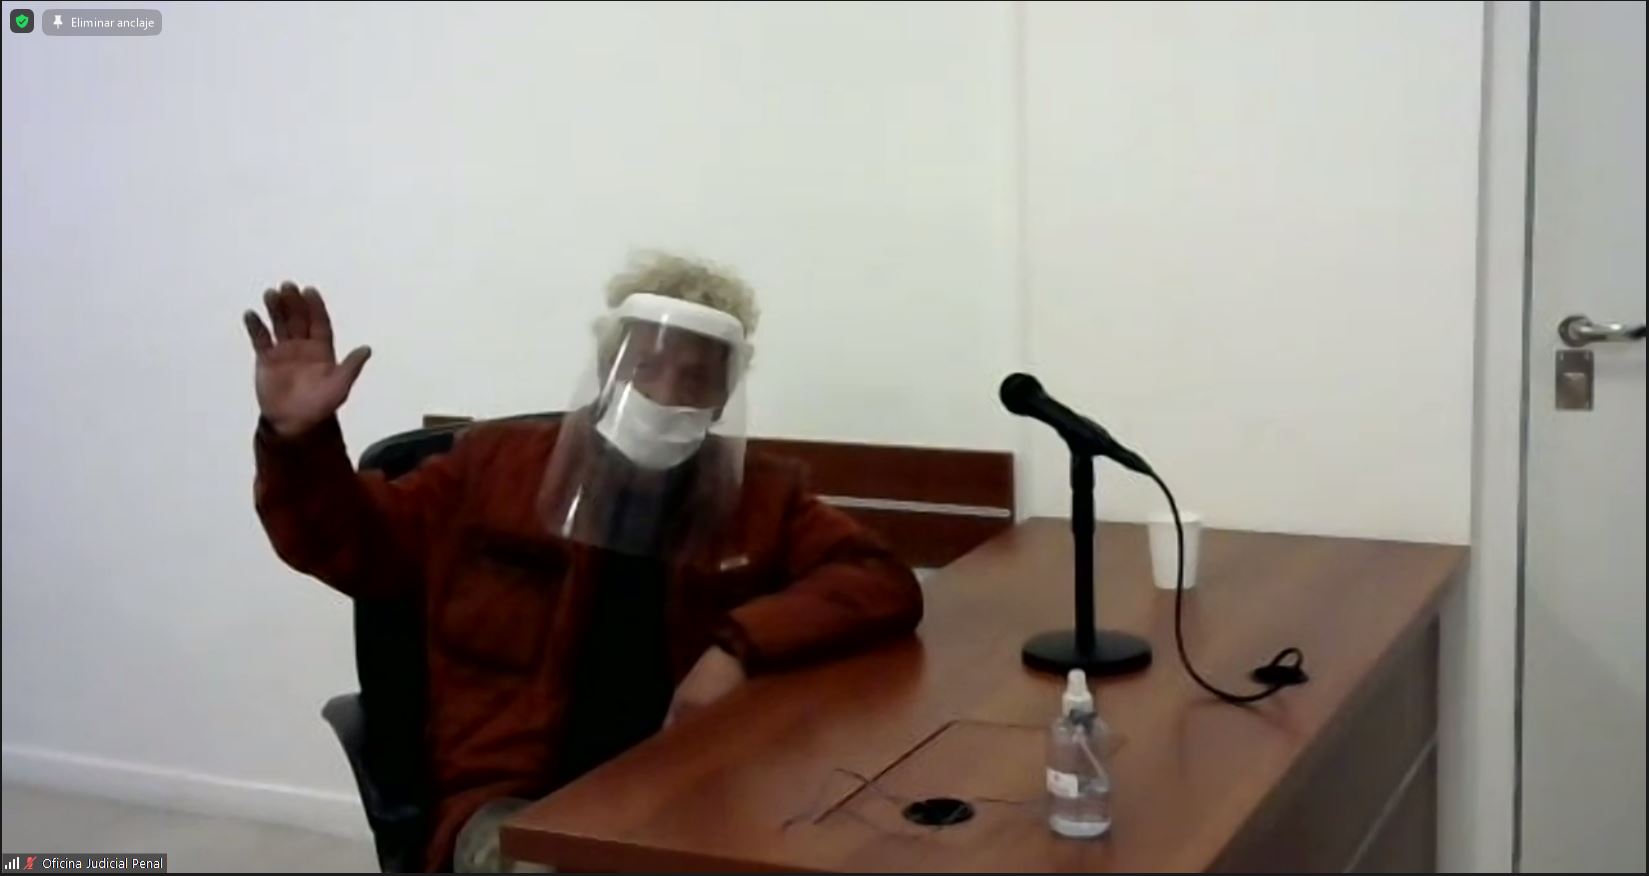 Chianese, acusado de partícipe necesario, pide hablar en la audiencia.